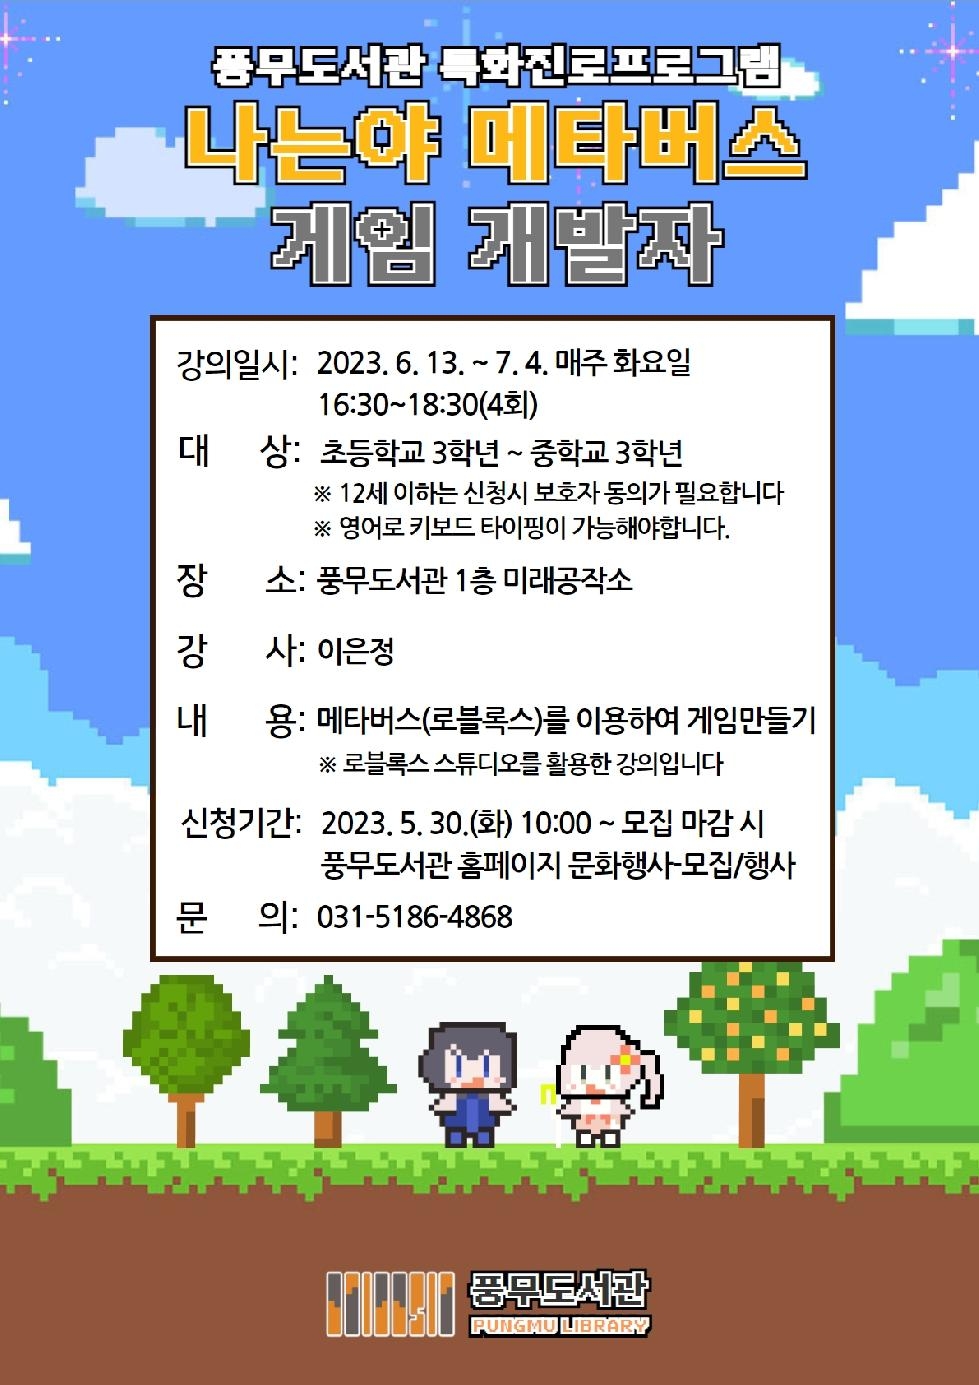 김포시 풍무도서관 특화진로프로그램 ‘나는야 메타버스 게임 개발자’